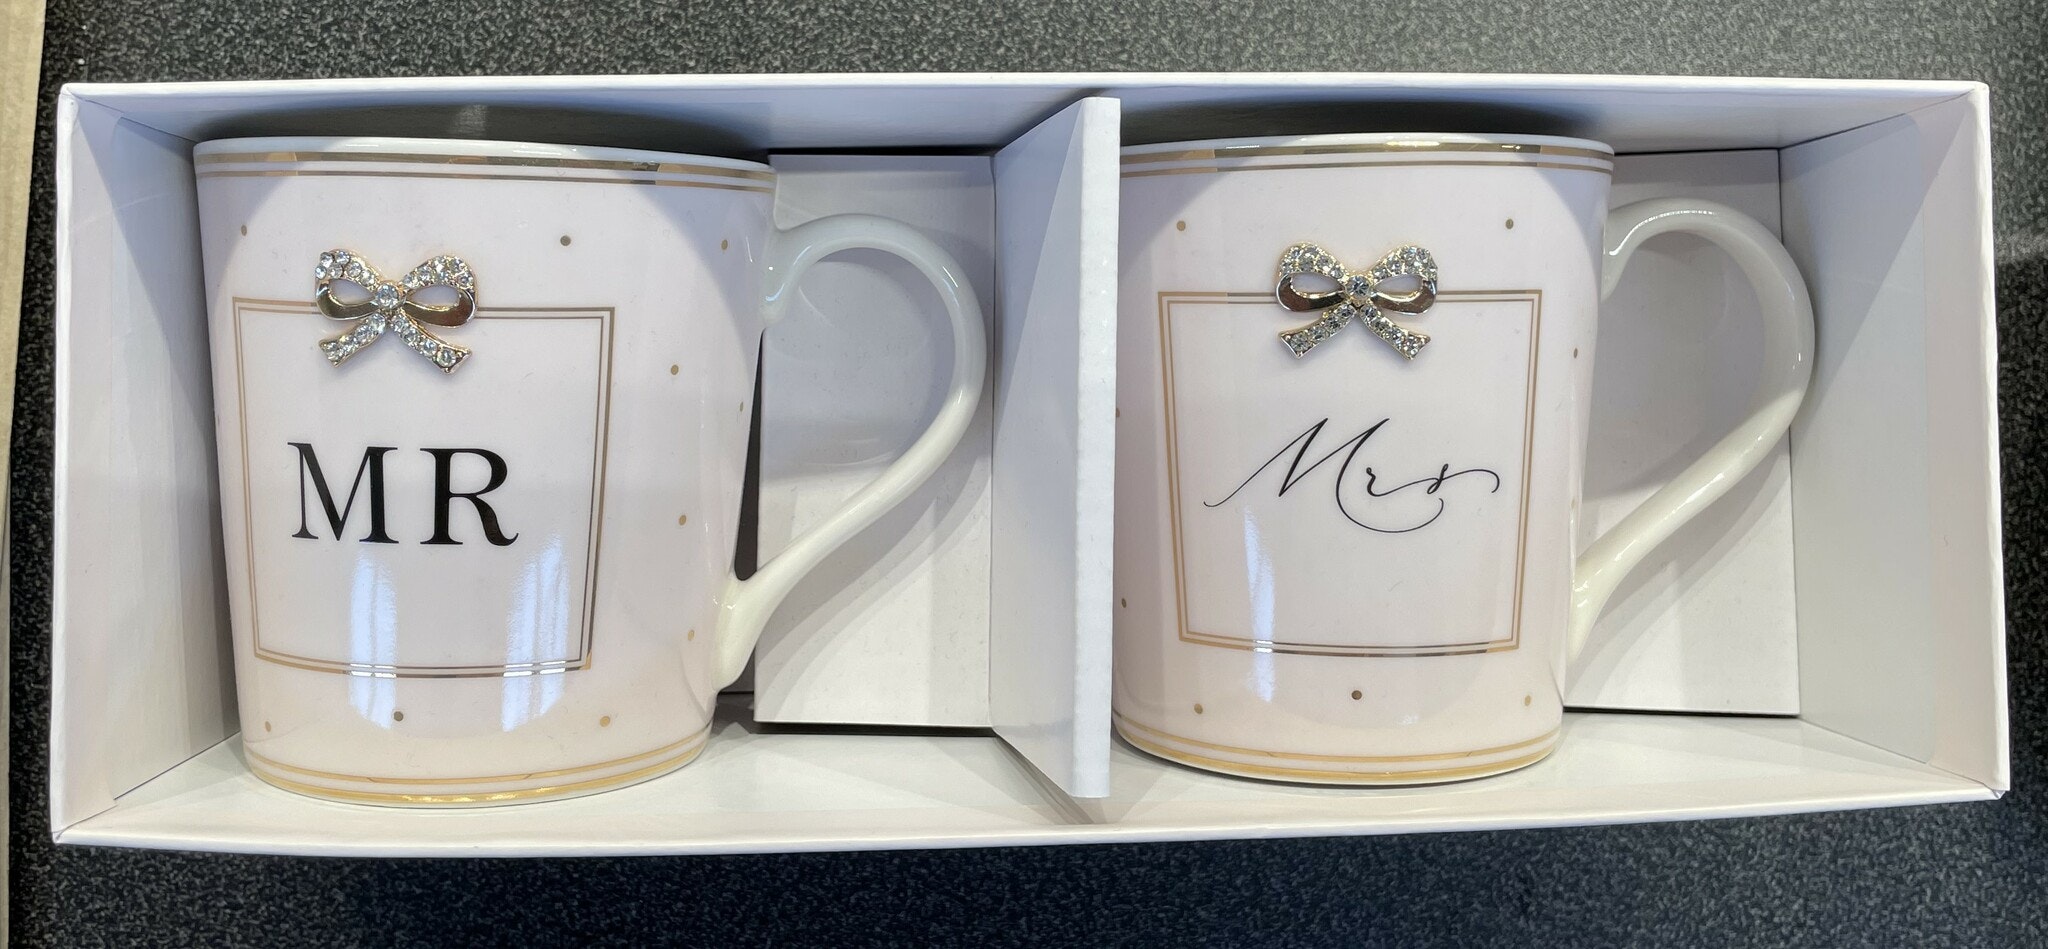 Mug Set - Mr & Mrs